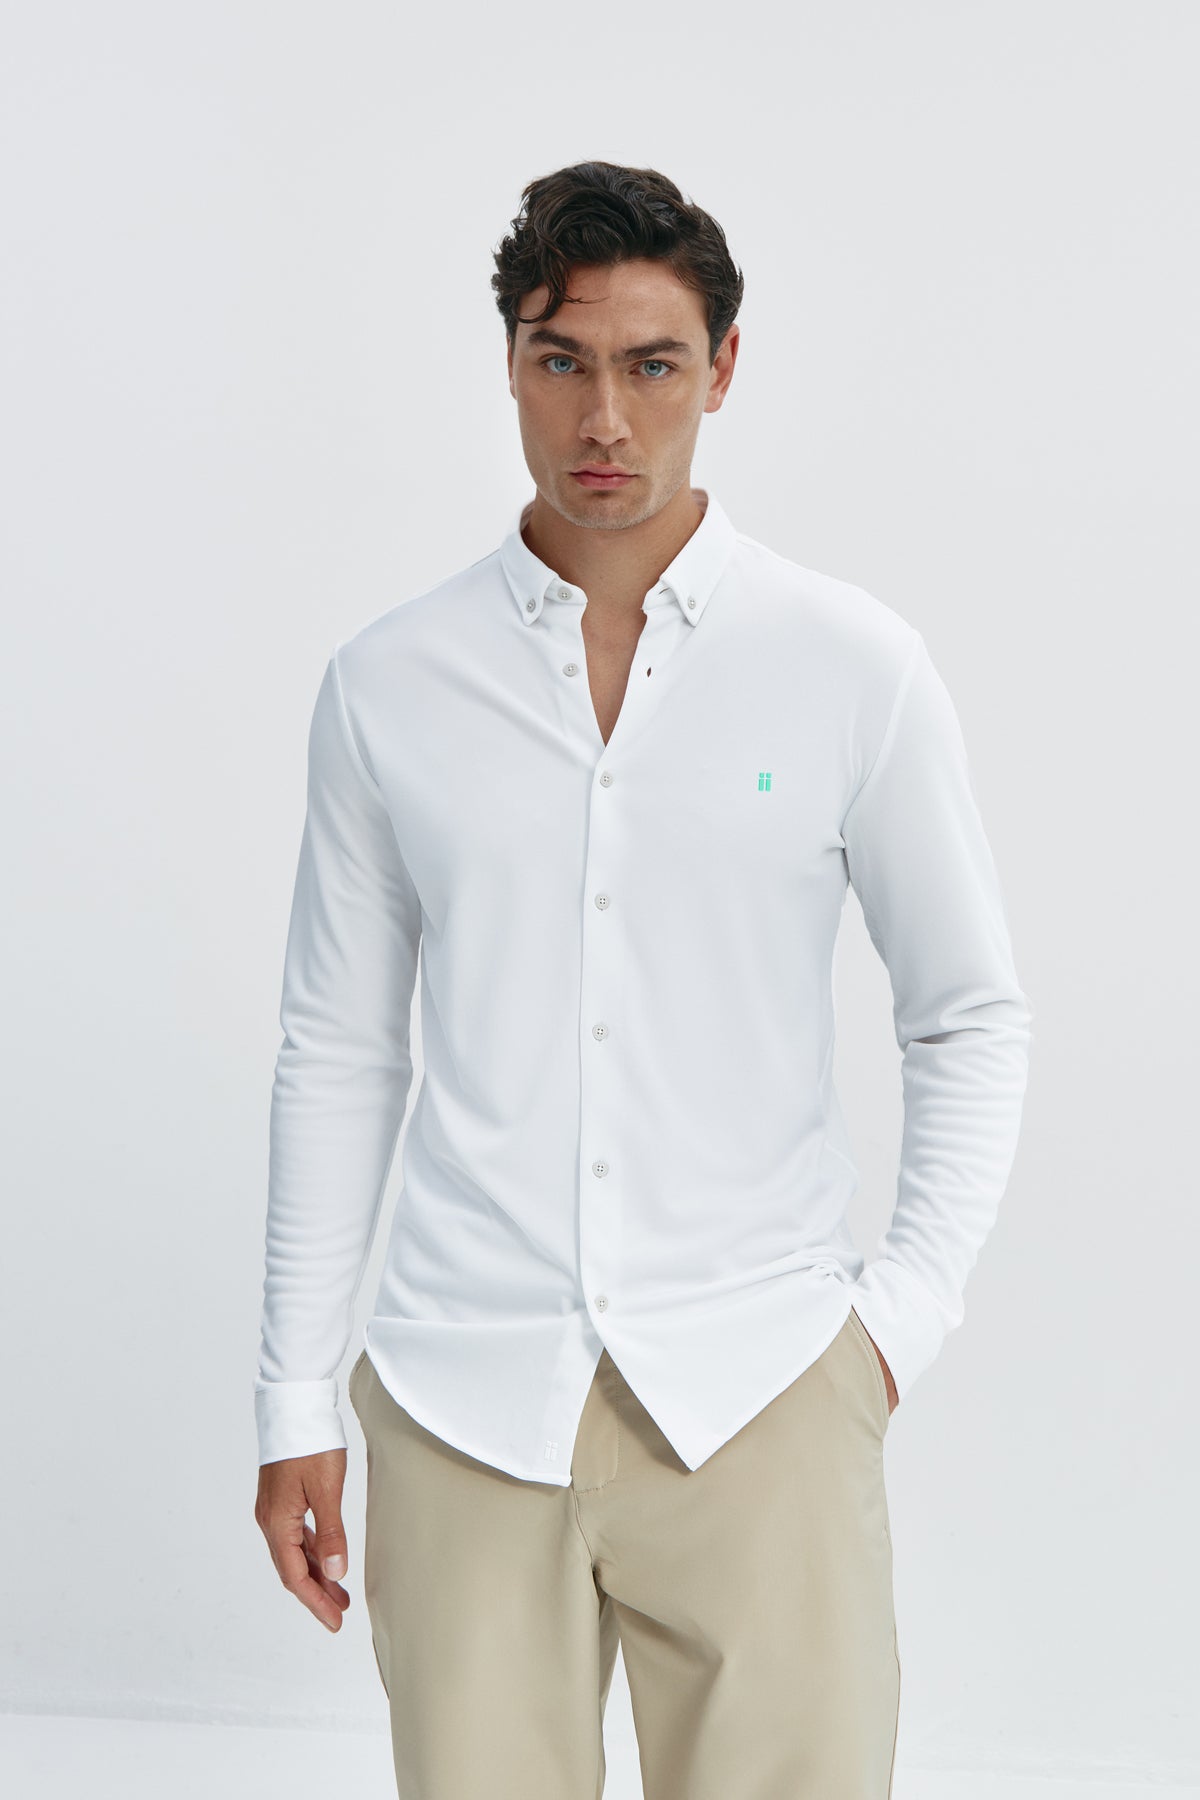  Camisa casual Blanco con logo para hombre sin arrugas ni manchas. Manga larga, antiarrugas y antimanchas. Foto frente